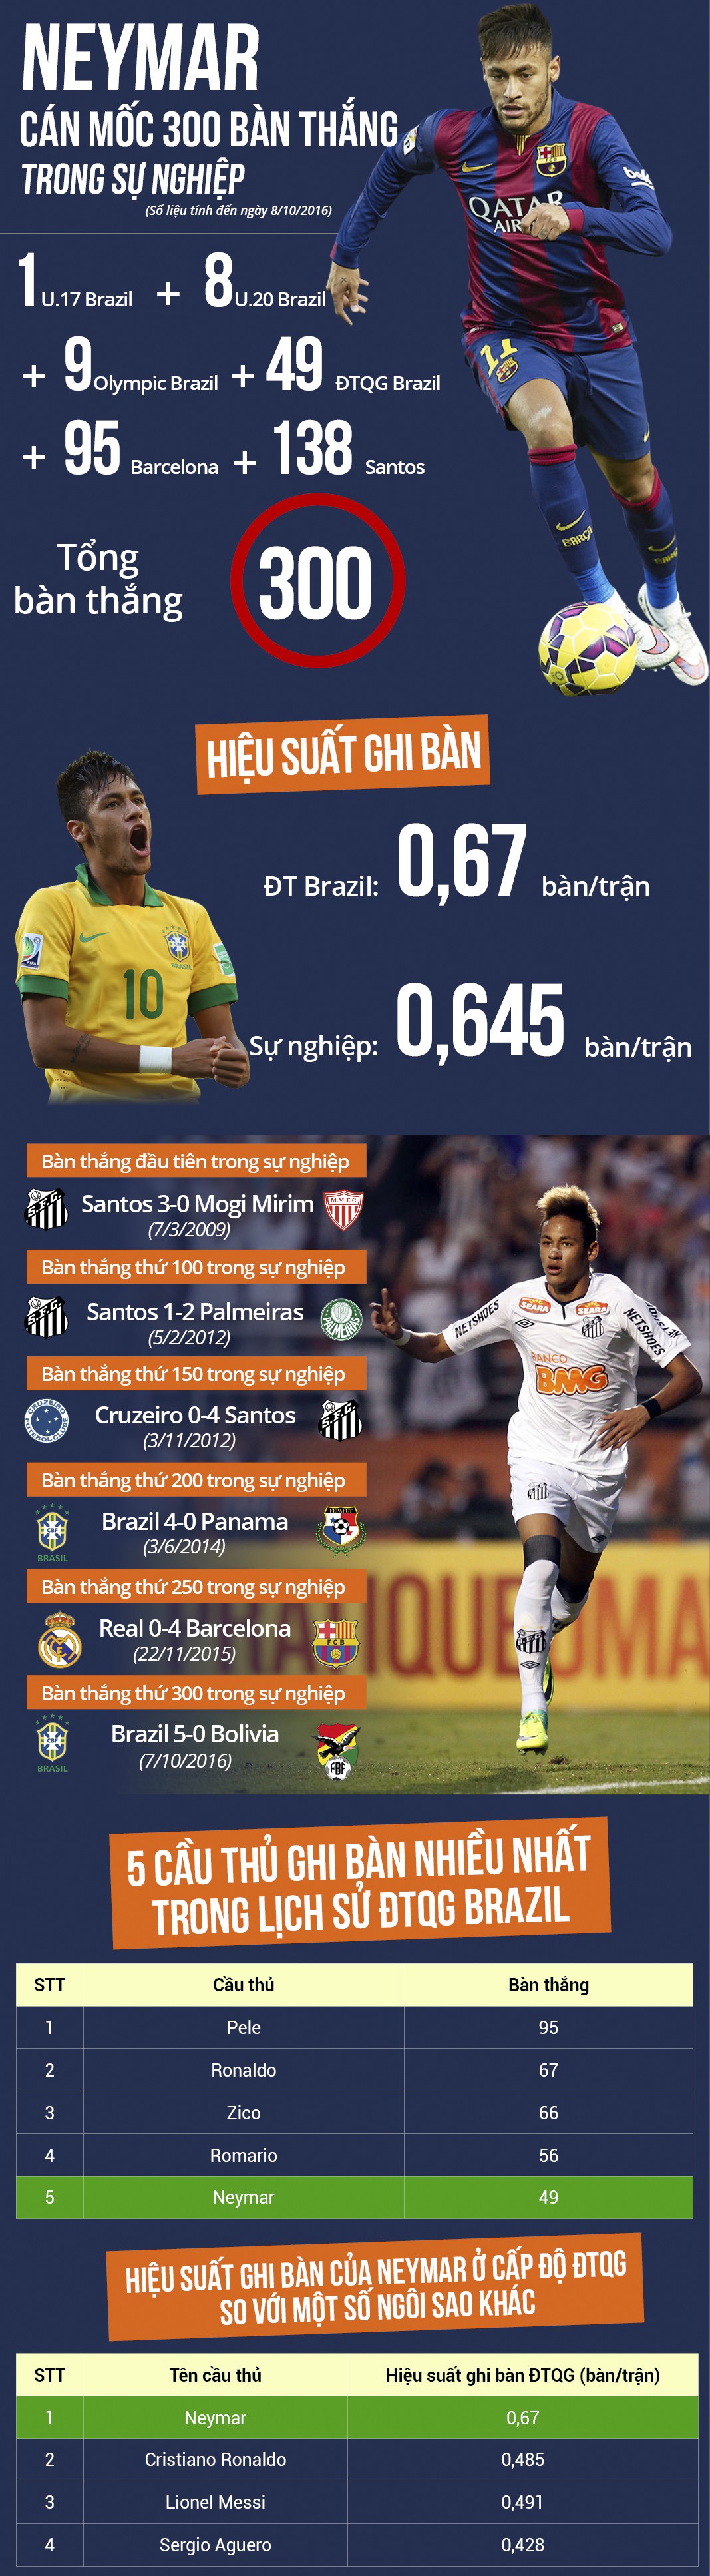 Neymar cán mốc 300 bàn thắng trong sự nghiệp.